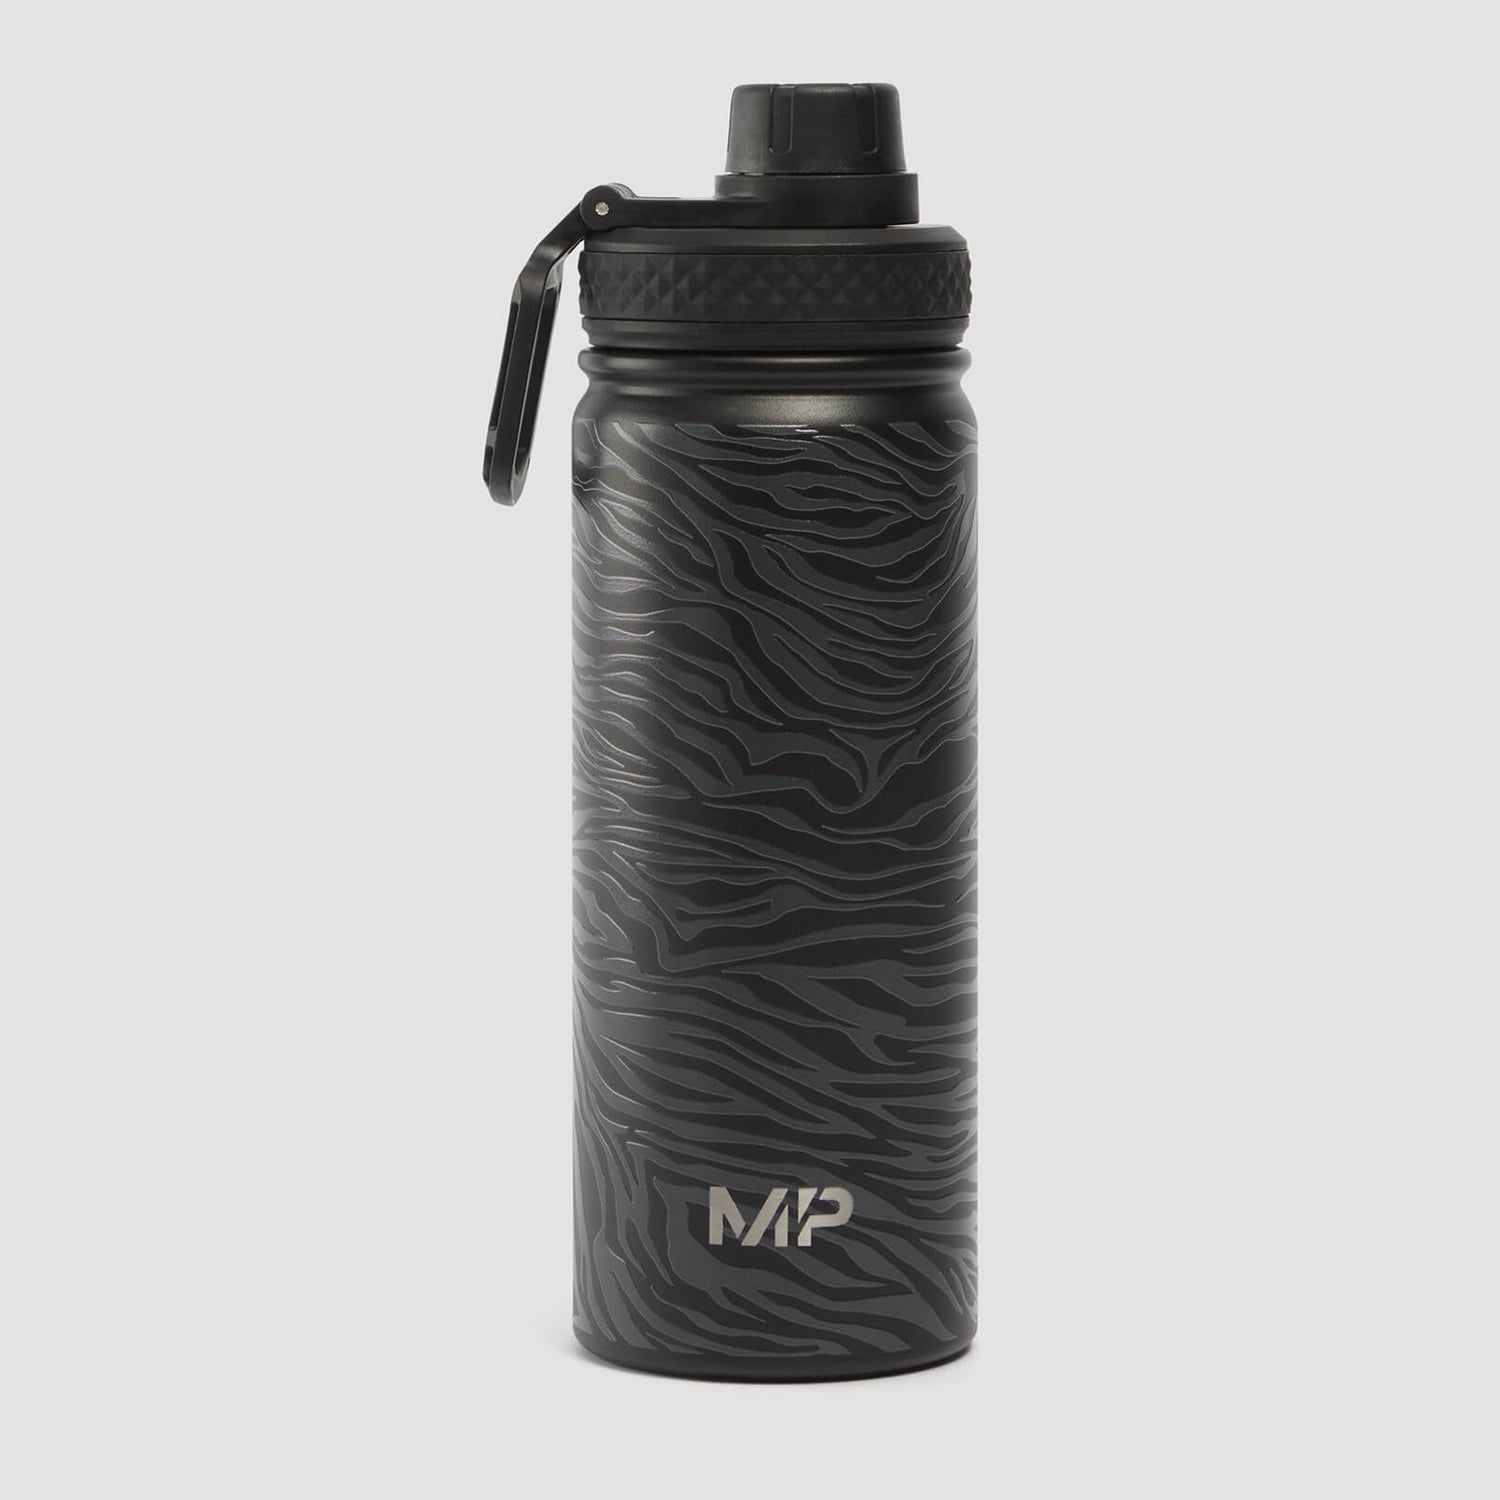 MP ゼブラ プリント メタル ウォーターボトル - ブラック/グラファイト - 500ml